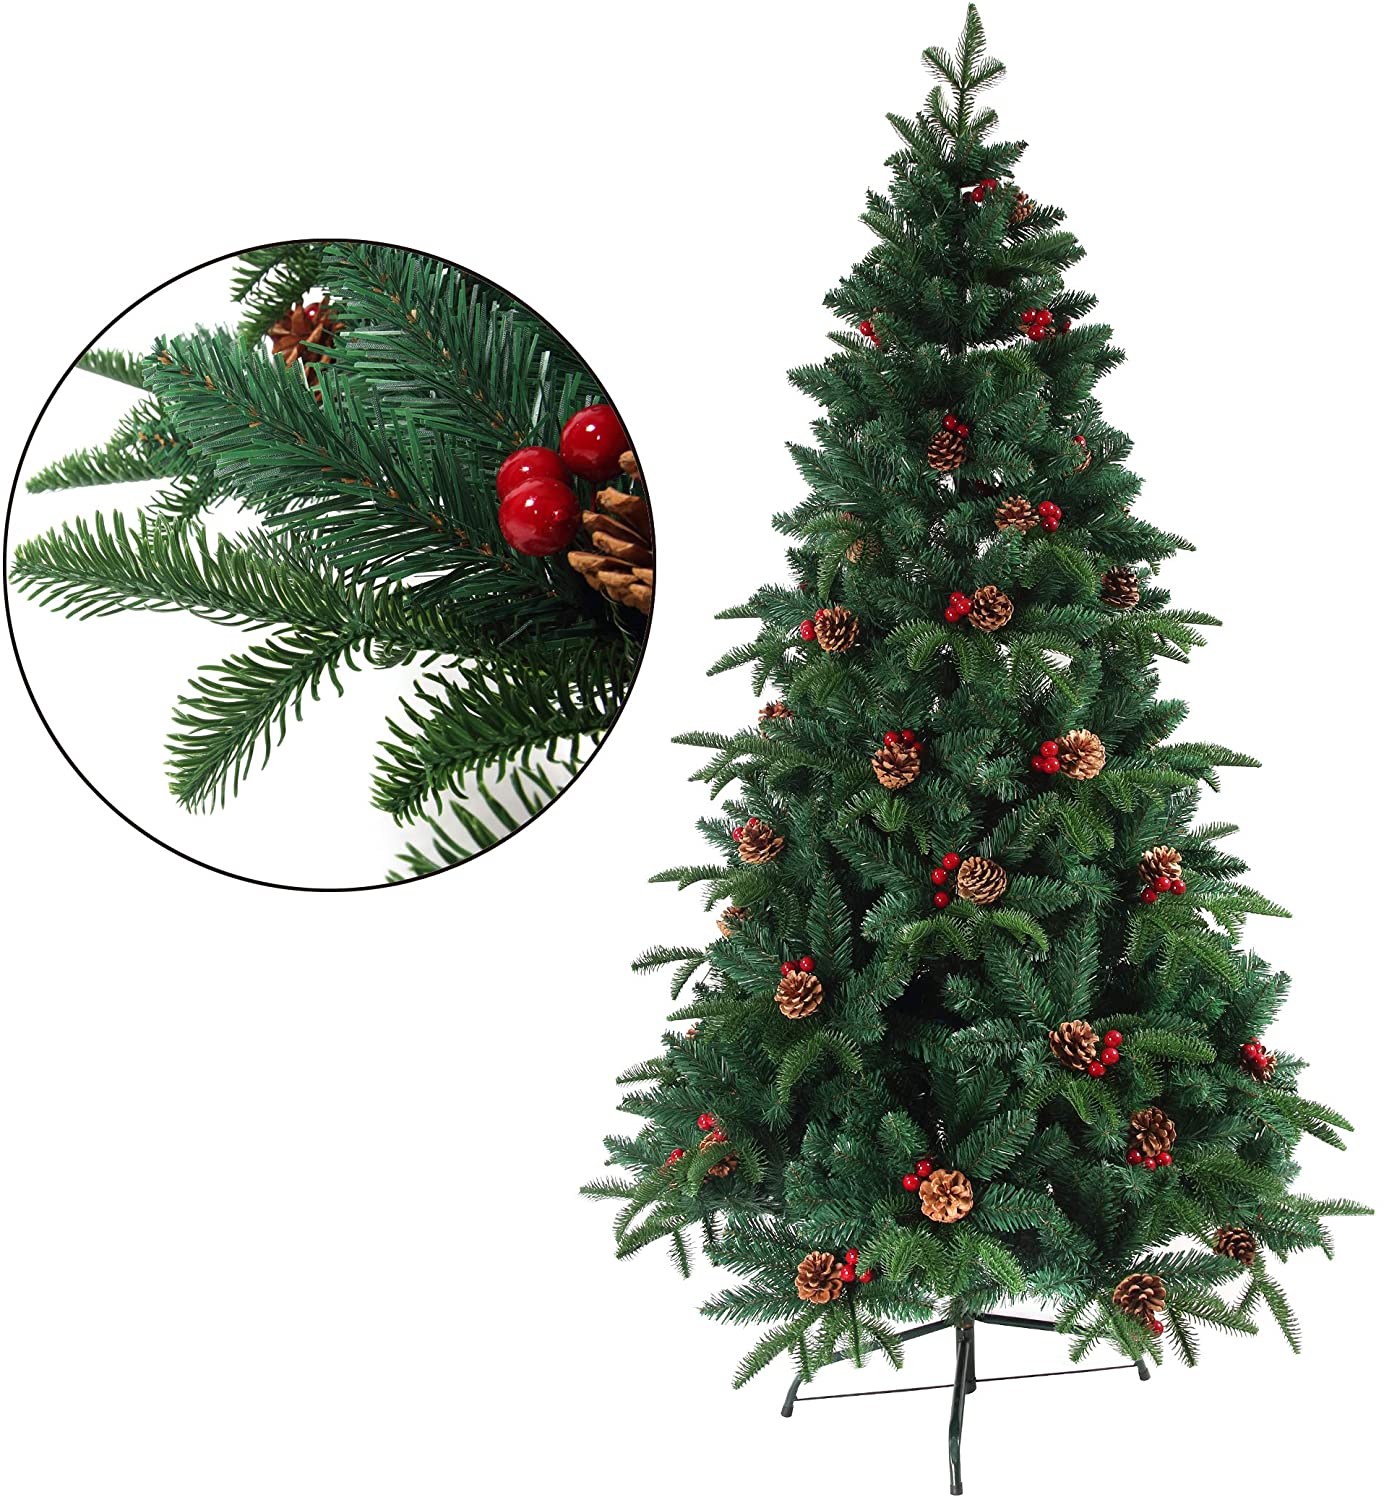 クリスマスツリー 枝大幅増量タイプ 松ぼっくり付き、赤い実付き、北欧